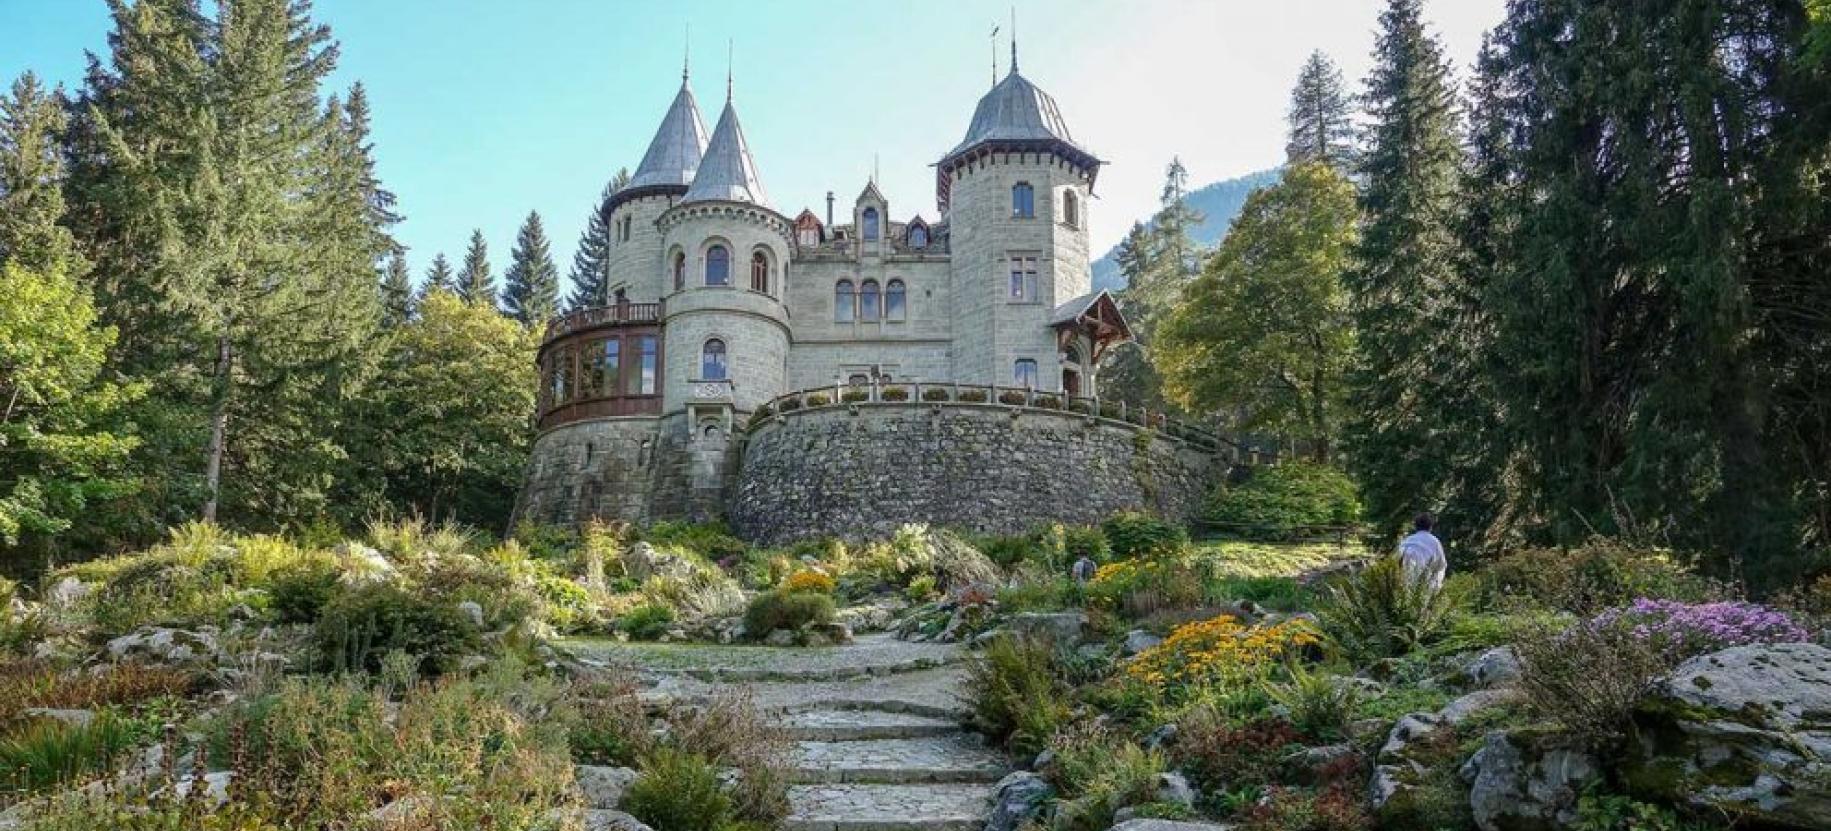 Castel Savoia in summer